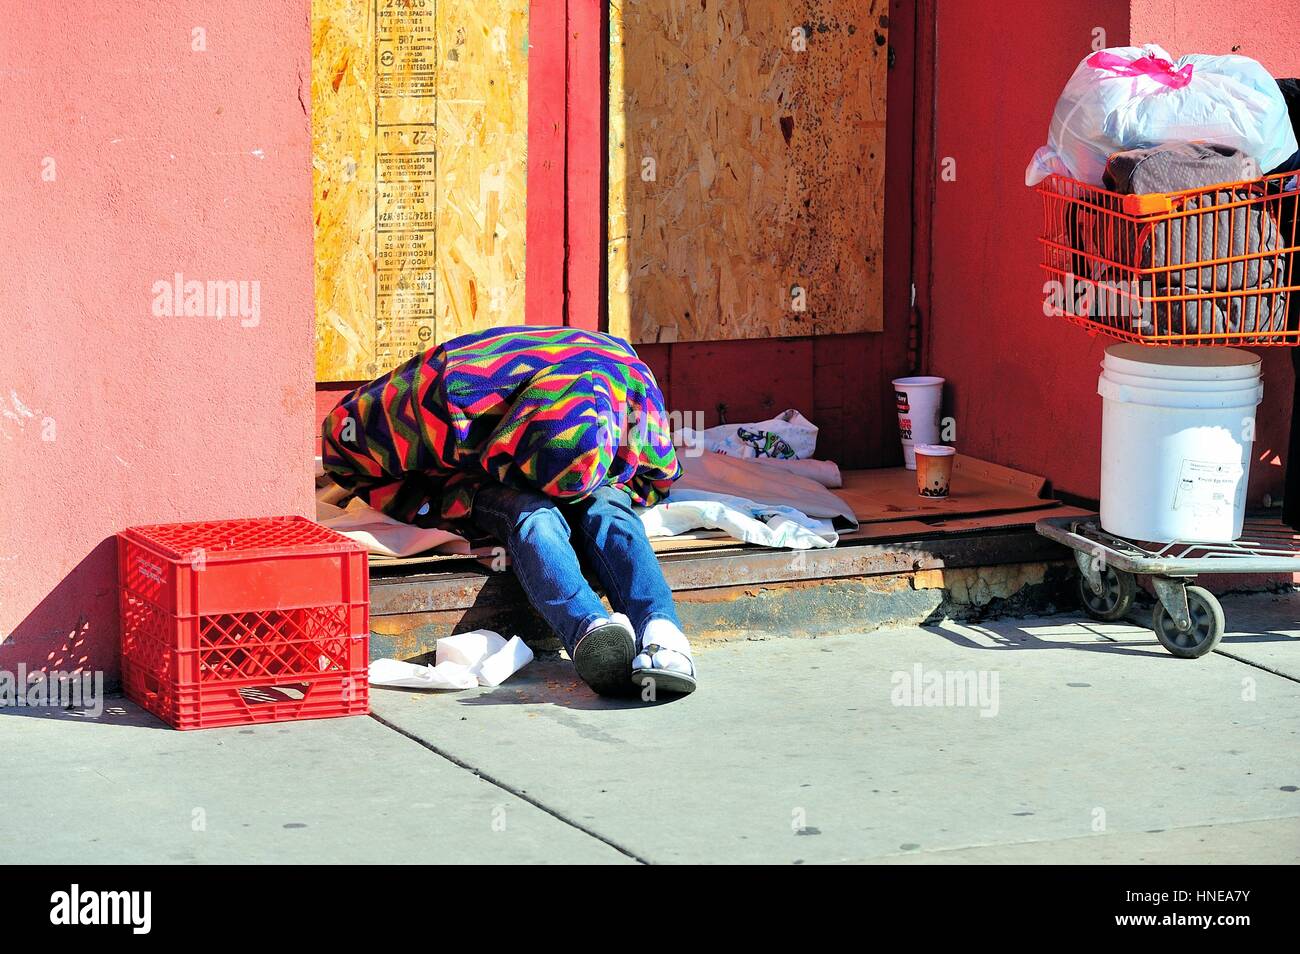 Ein obdachloser Mann unter seinen Sachen in einem Geentert, storefront Eingangsbereich in Chicagos Chinatown Nachbarschaft. Chicago, Illinois, USA. Stockfoto